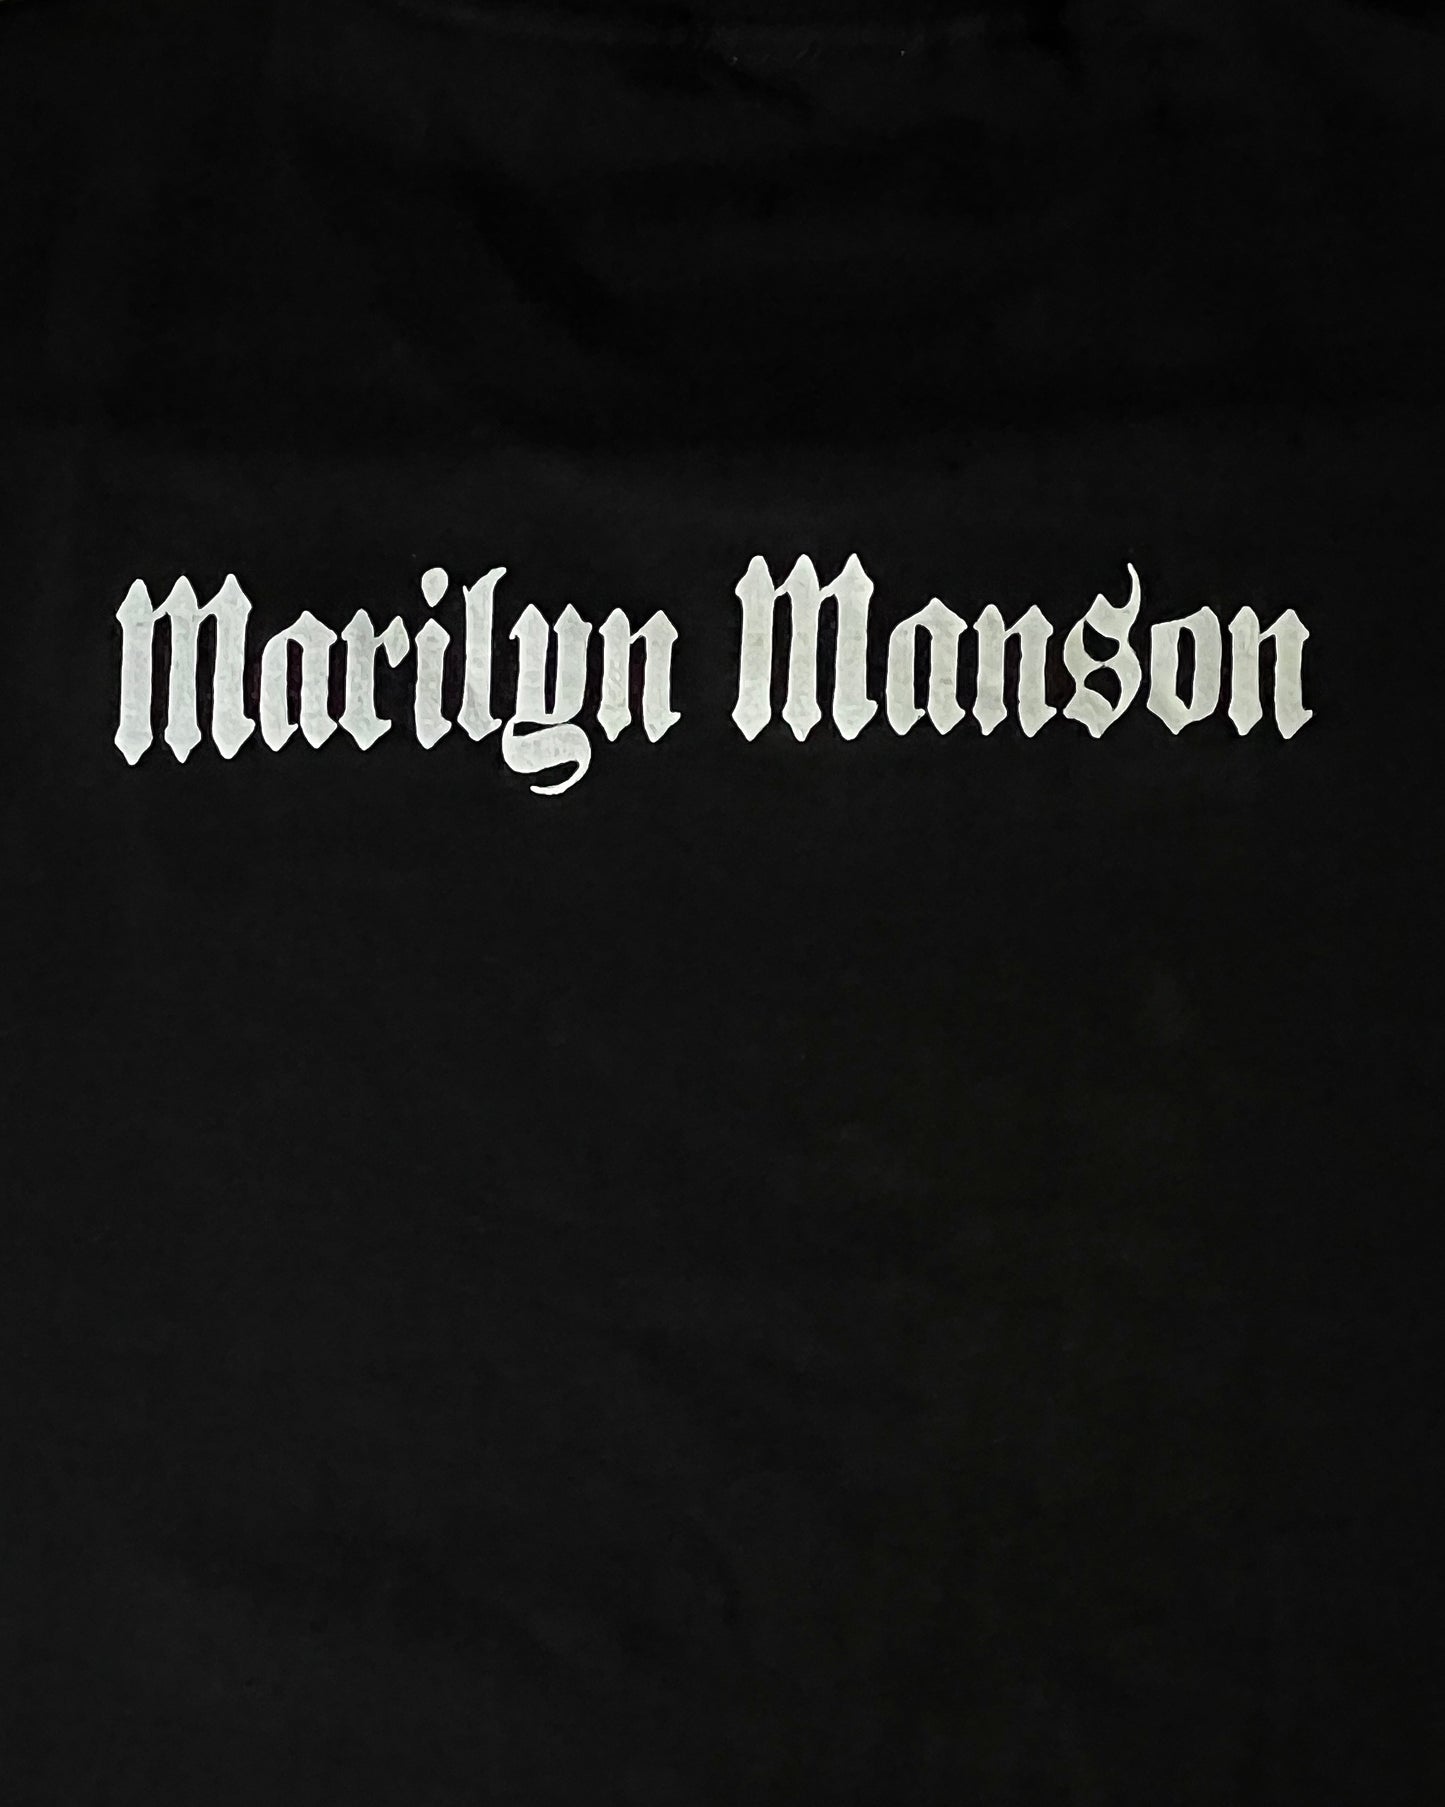 2000's Marylin Manson "Got Violence?" Longsleeve